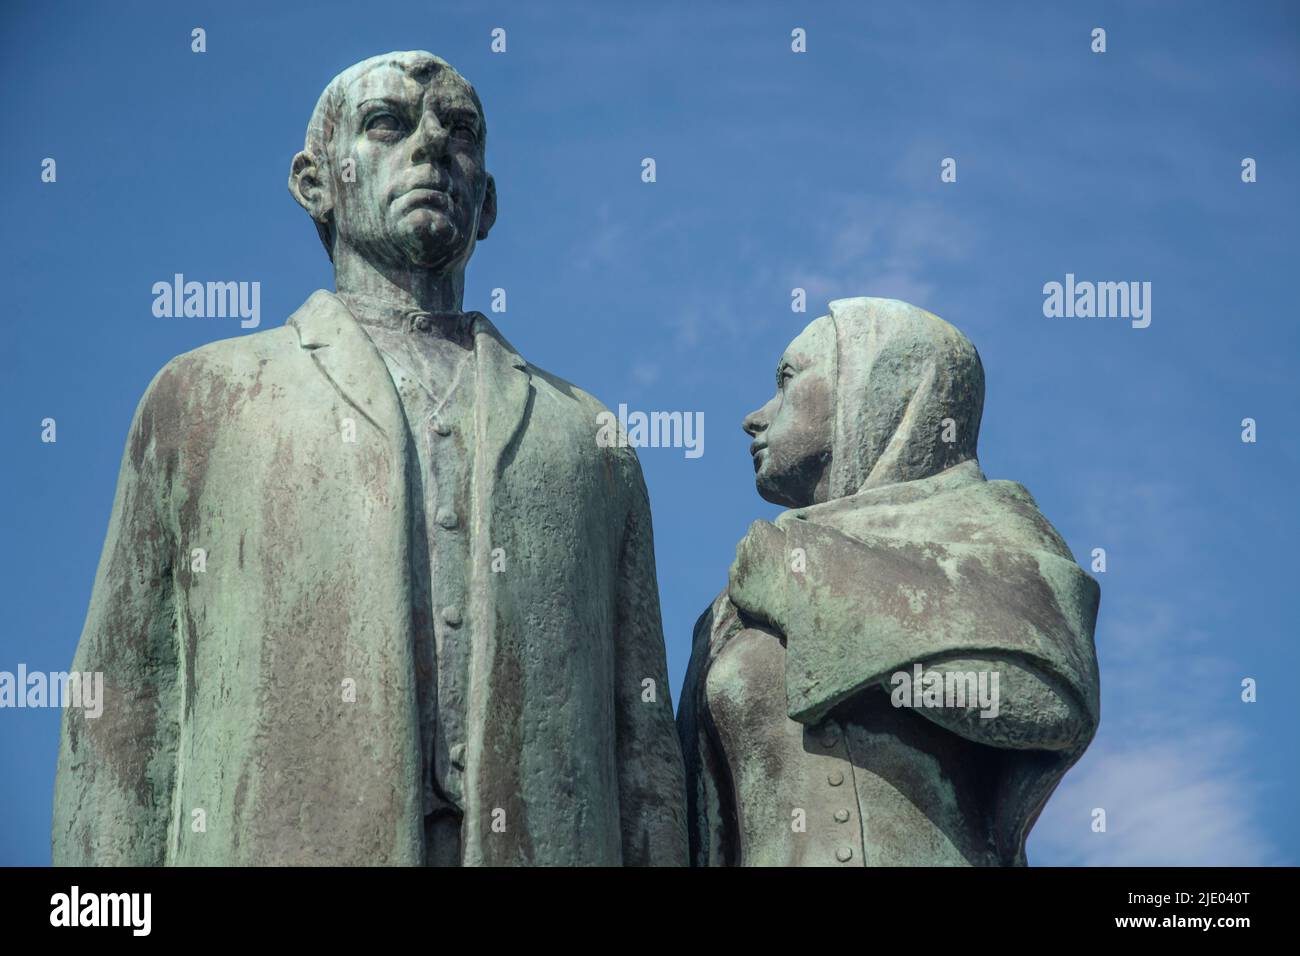 Emigration Monument, Bronzeskulptur, Familie Emigration nach Nordamerika im 19.. Jahrhundert. Mann blickt nach vorne, Frau blickt zurück, Bildhauer Axel Stockfoto